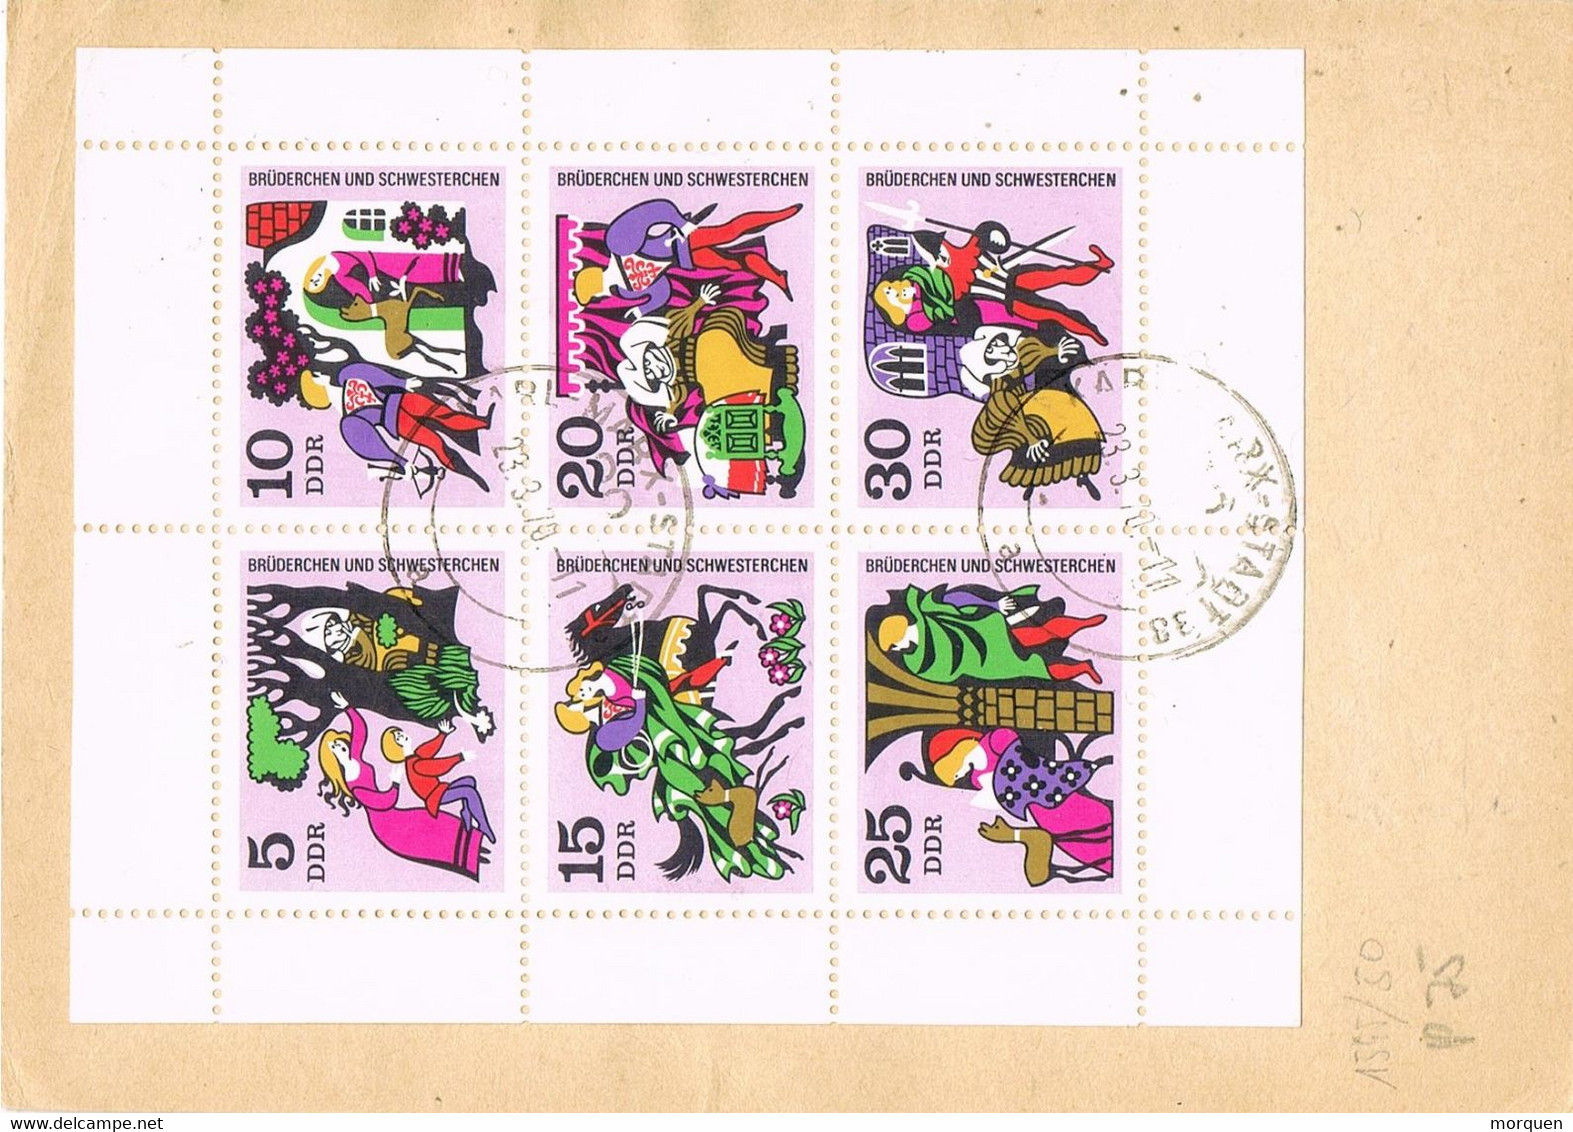 48052. Entero Postal Certificado KARL MARX STADT (Alemania DDR)  1970. Hojita Al Dorso Cuentos Infantiles - Cartes Postales - Oblitérées